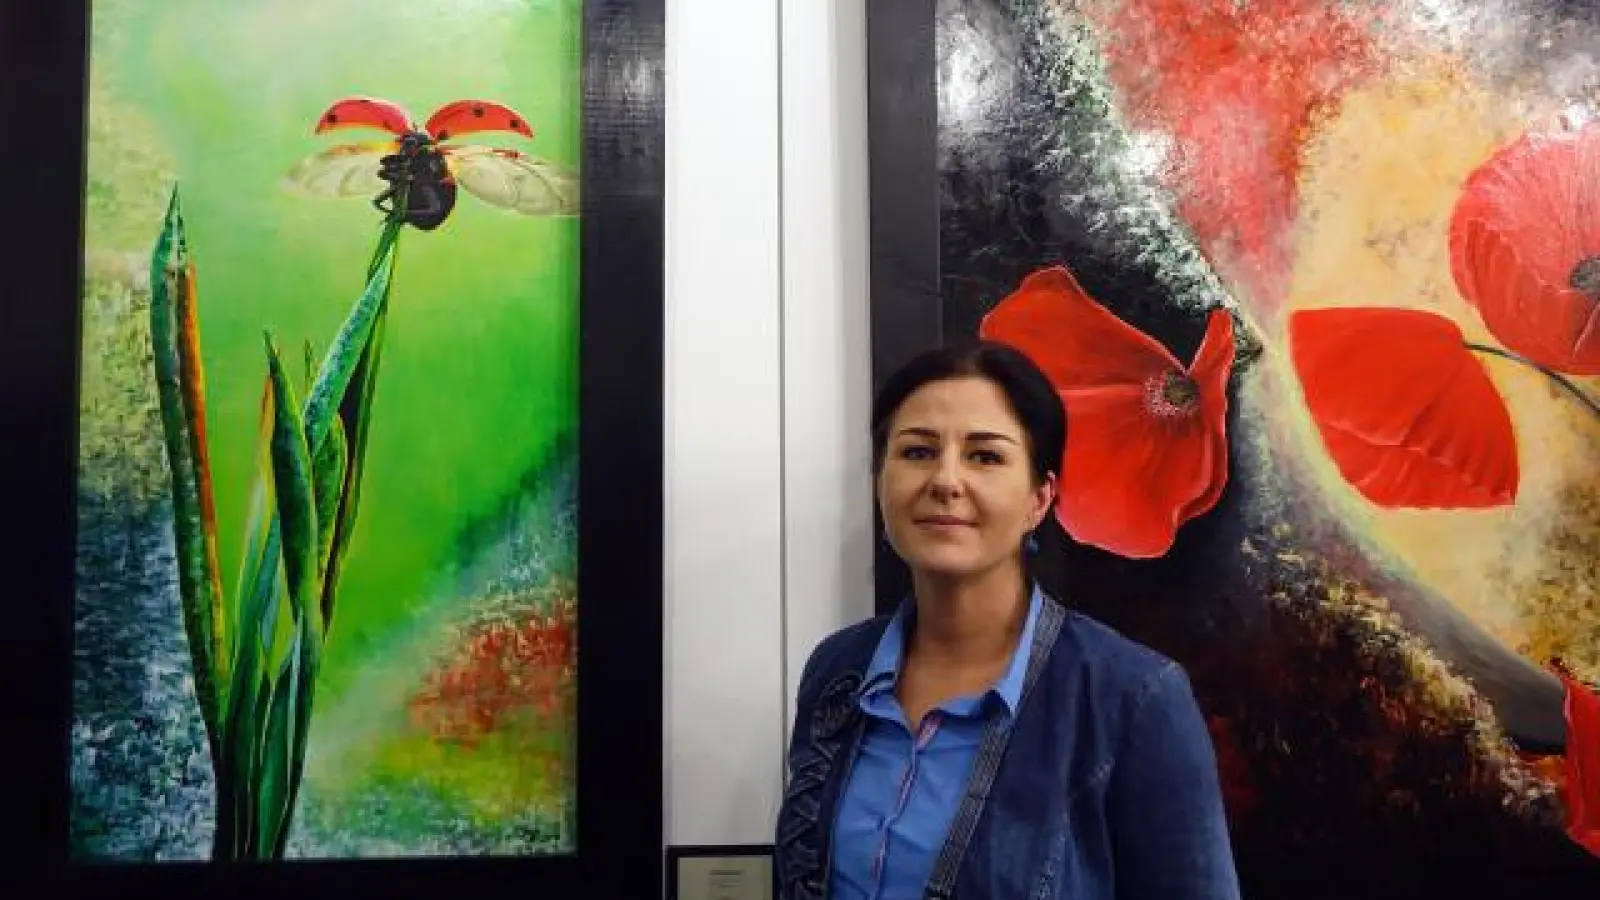 Künstlerin Christina Bego zeigt ihre Bilder „Glückslandung”, das auch schon zur Mitgliederjahresausstellung im Sisi-Schloss hing, und „Mohnschnitt”, ein Werk von 2008.